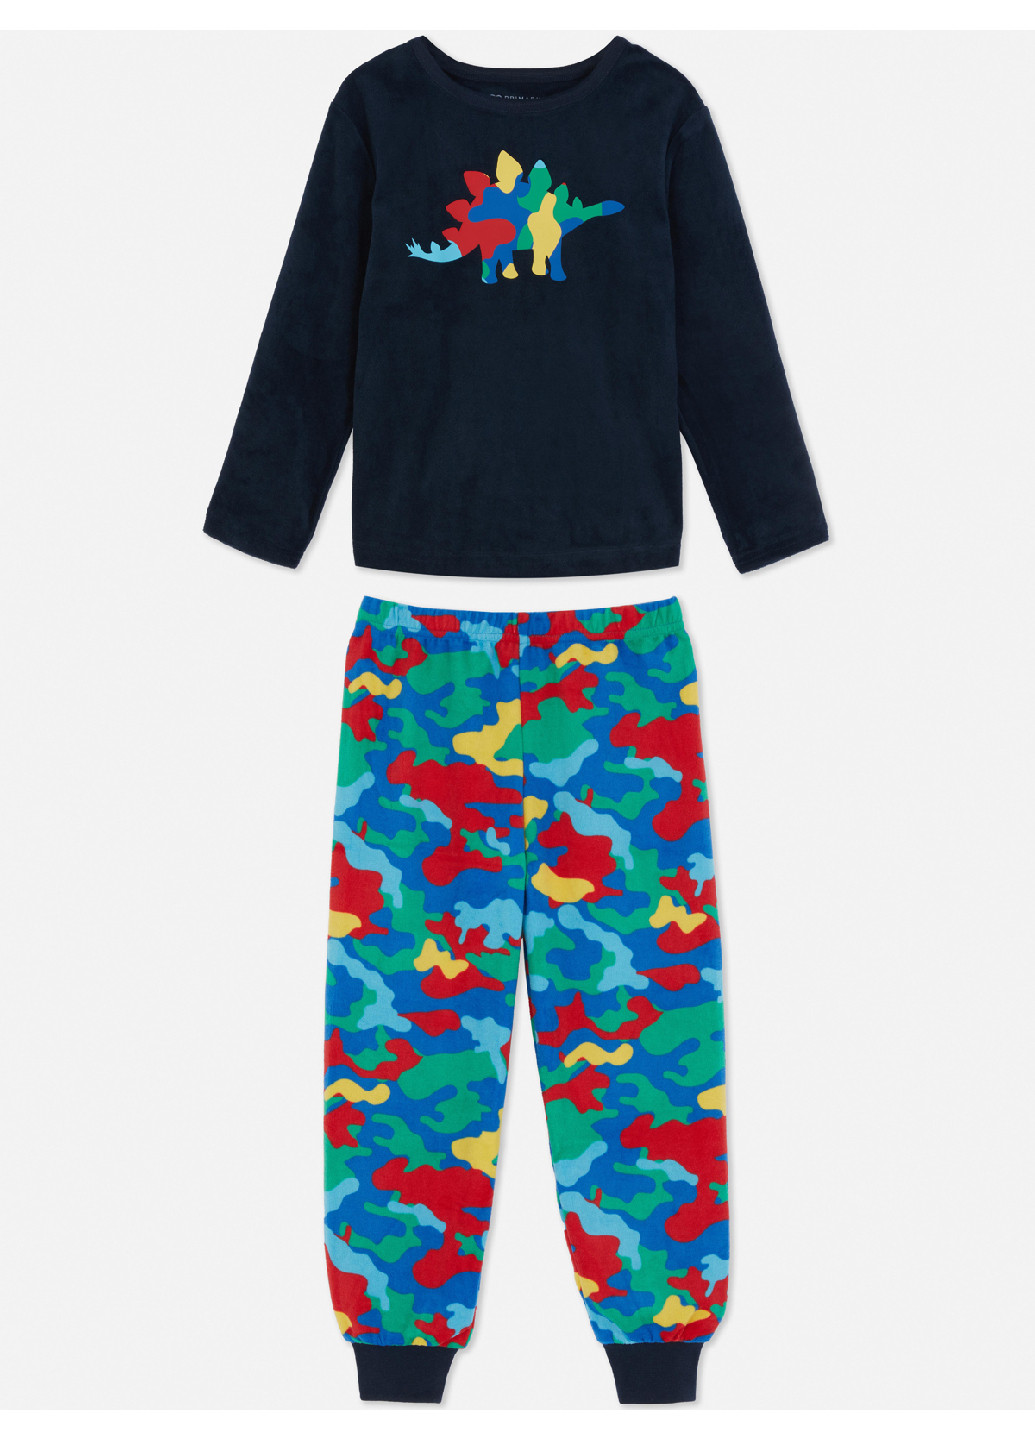 Комбинированная всесезон велюровая пижама (свитшот, брюки) свитшот + брюки Primark